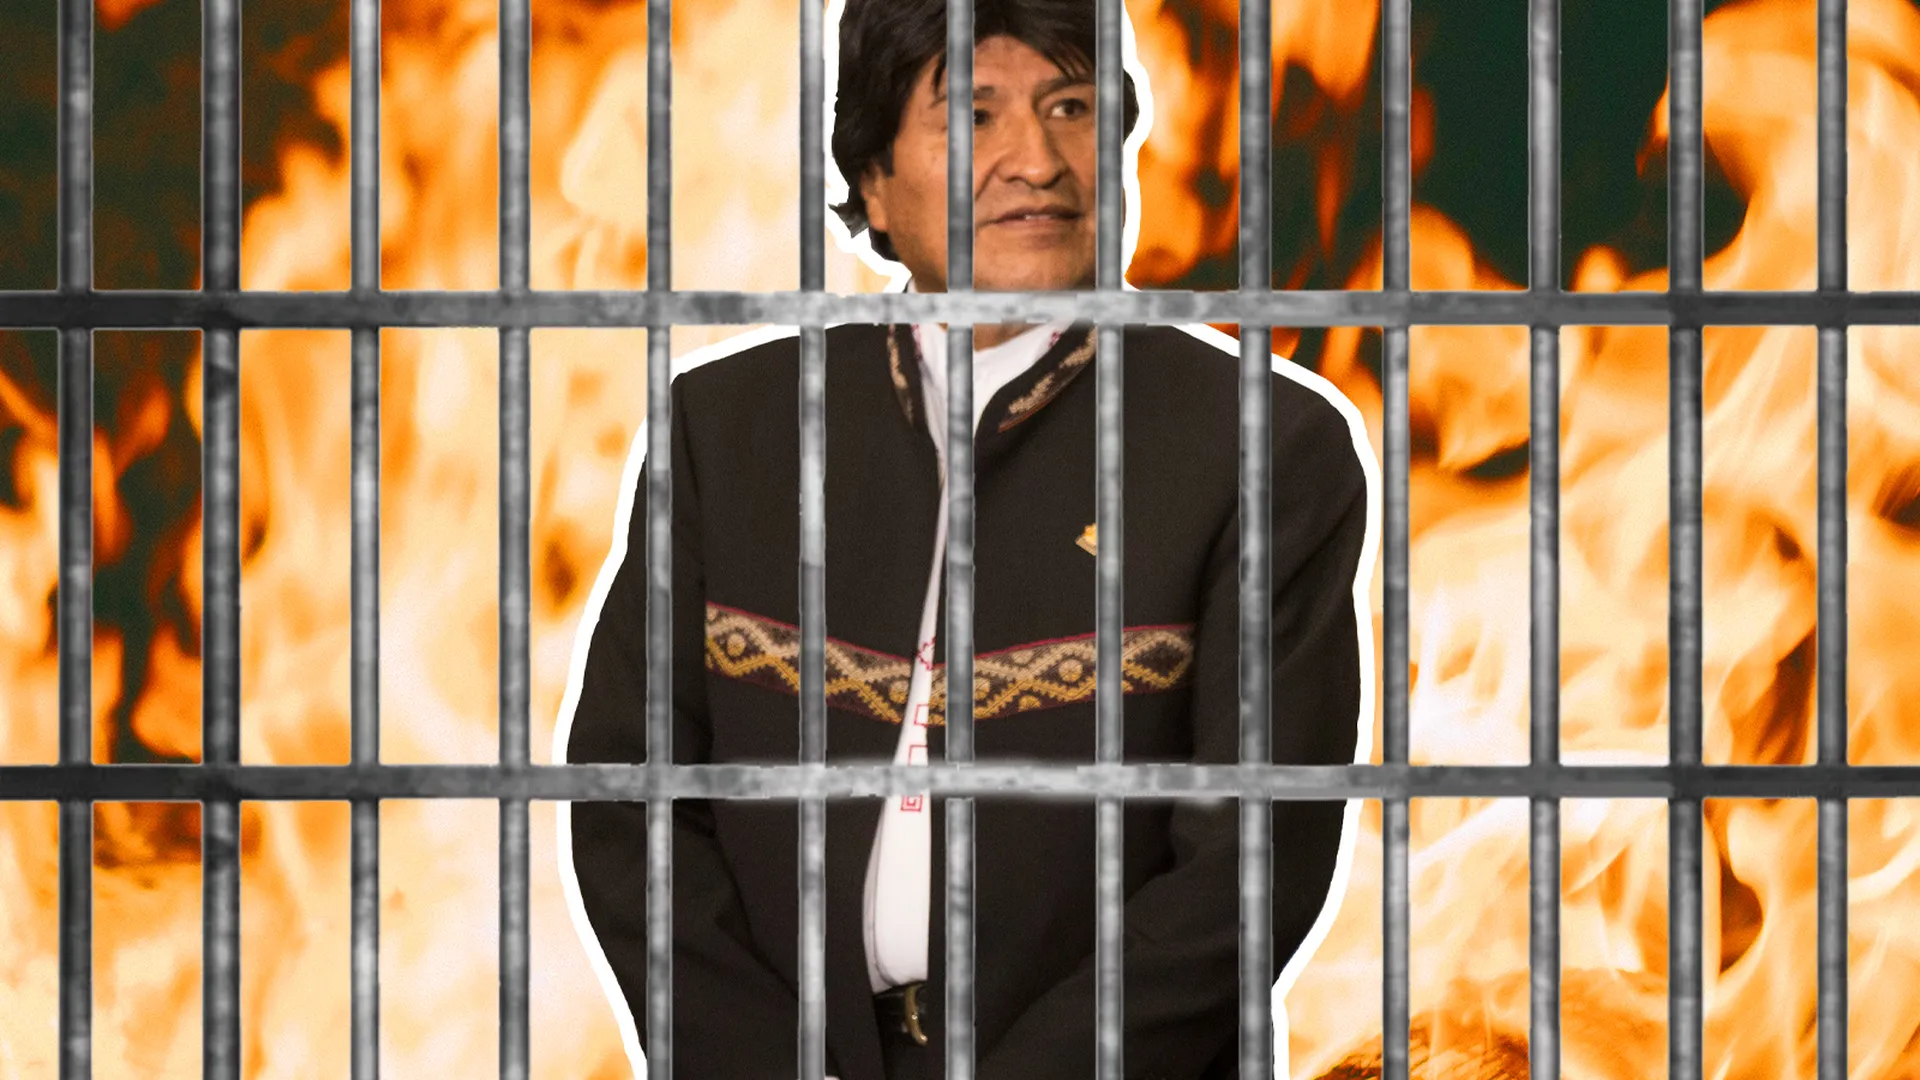 Изнасилование, торговля людьми и терроризм. Экс-президент Боливии попал под уголовное дело